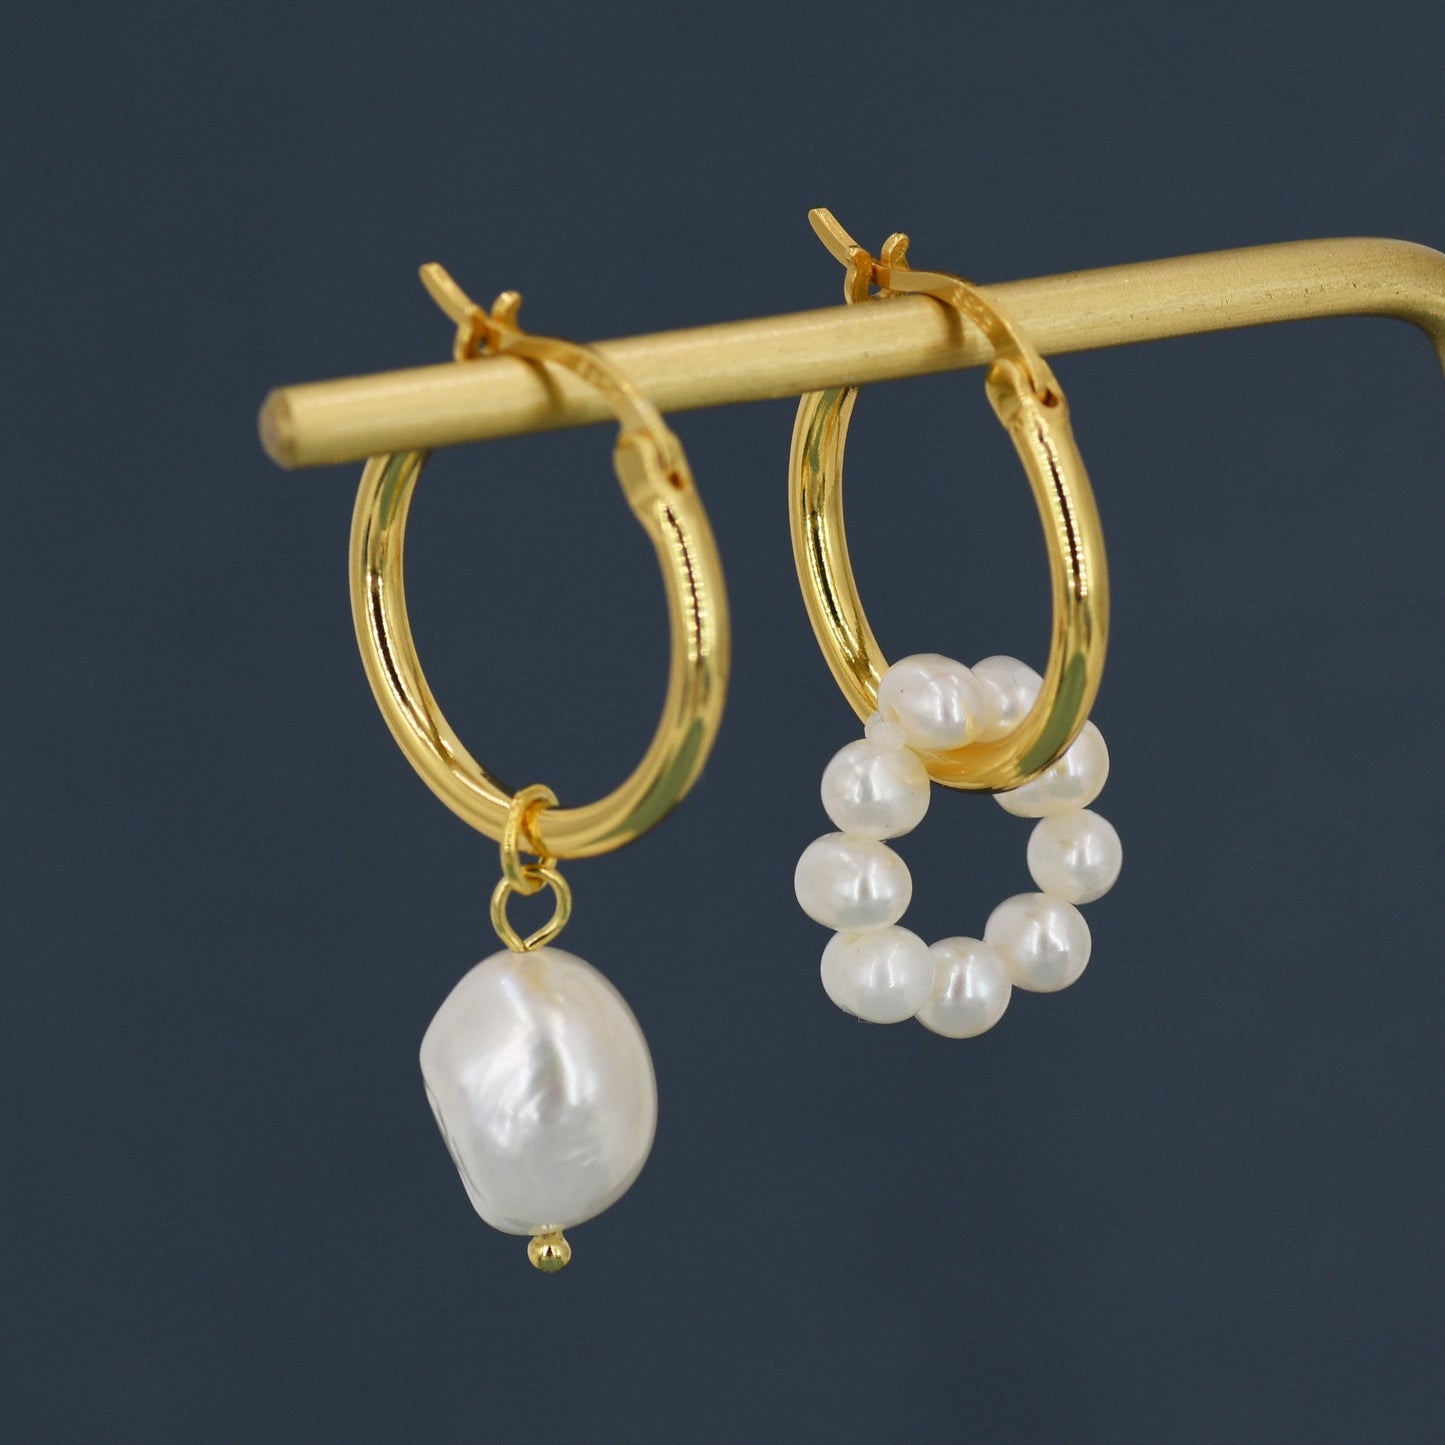 Mismatched Detachable Pearl Dangle Hoop Earrings in Sterling Silver, Silver or Gold, 14mm Hoops, Simple Hoop Earrings